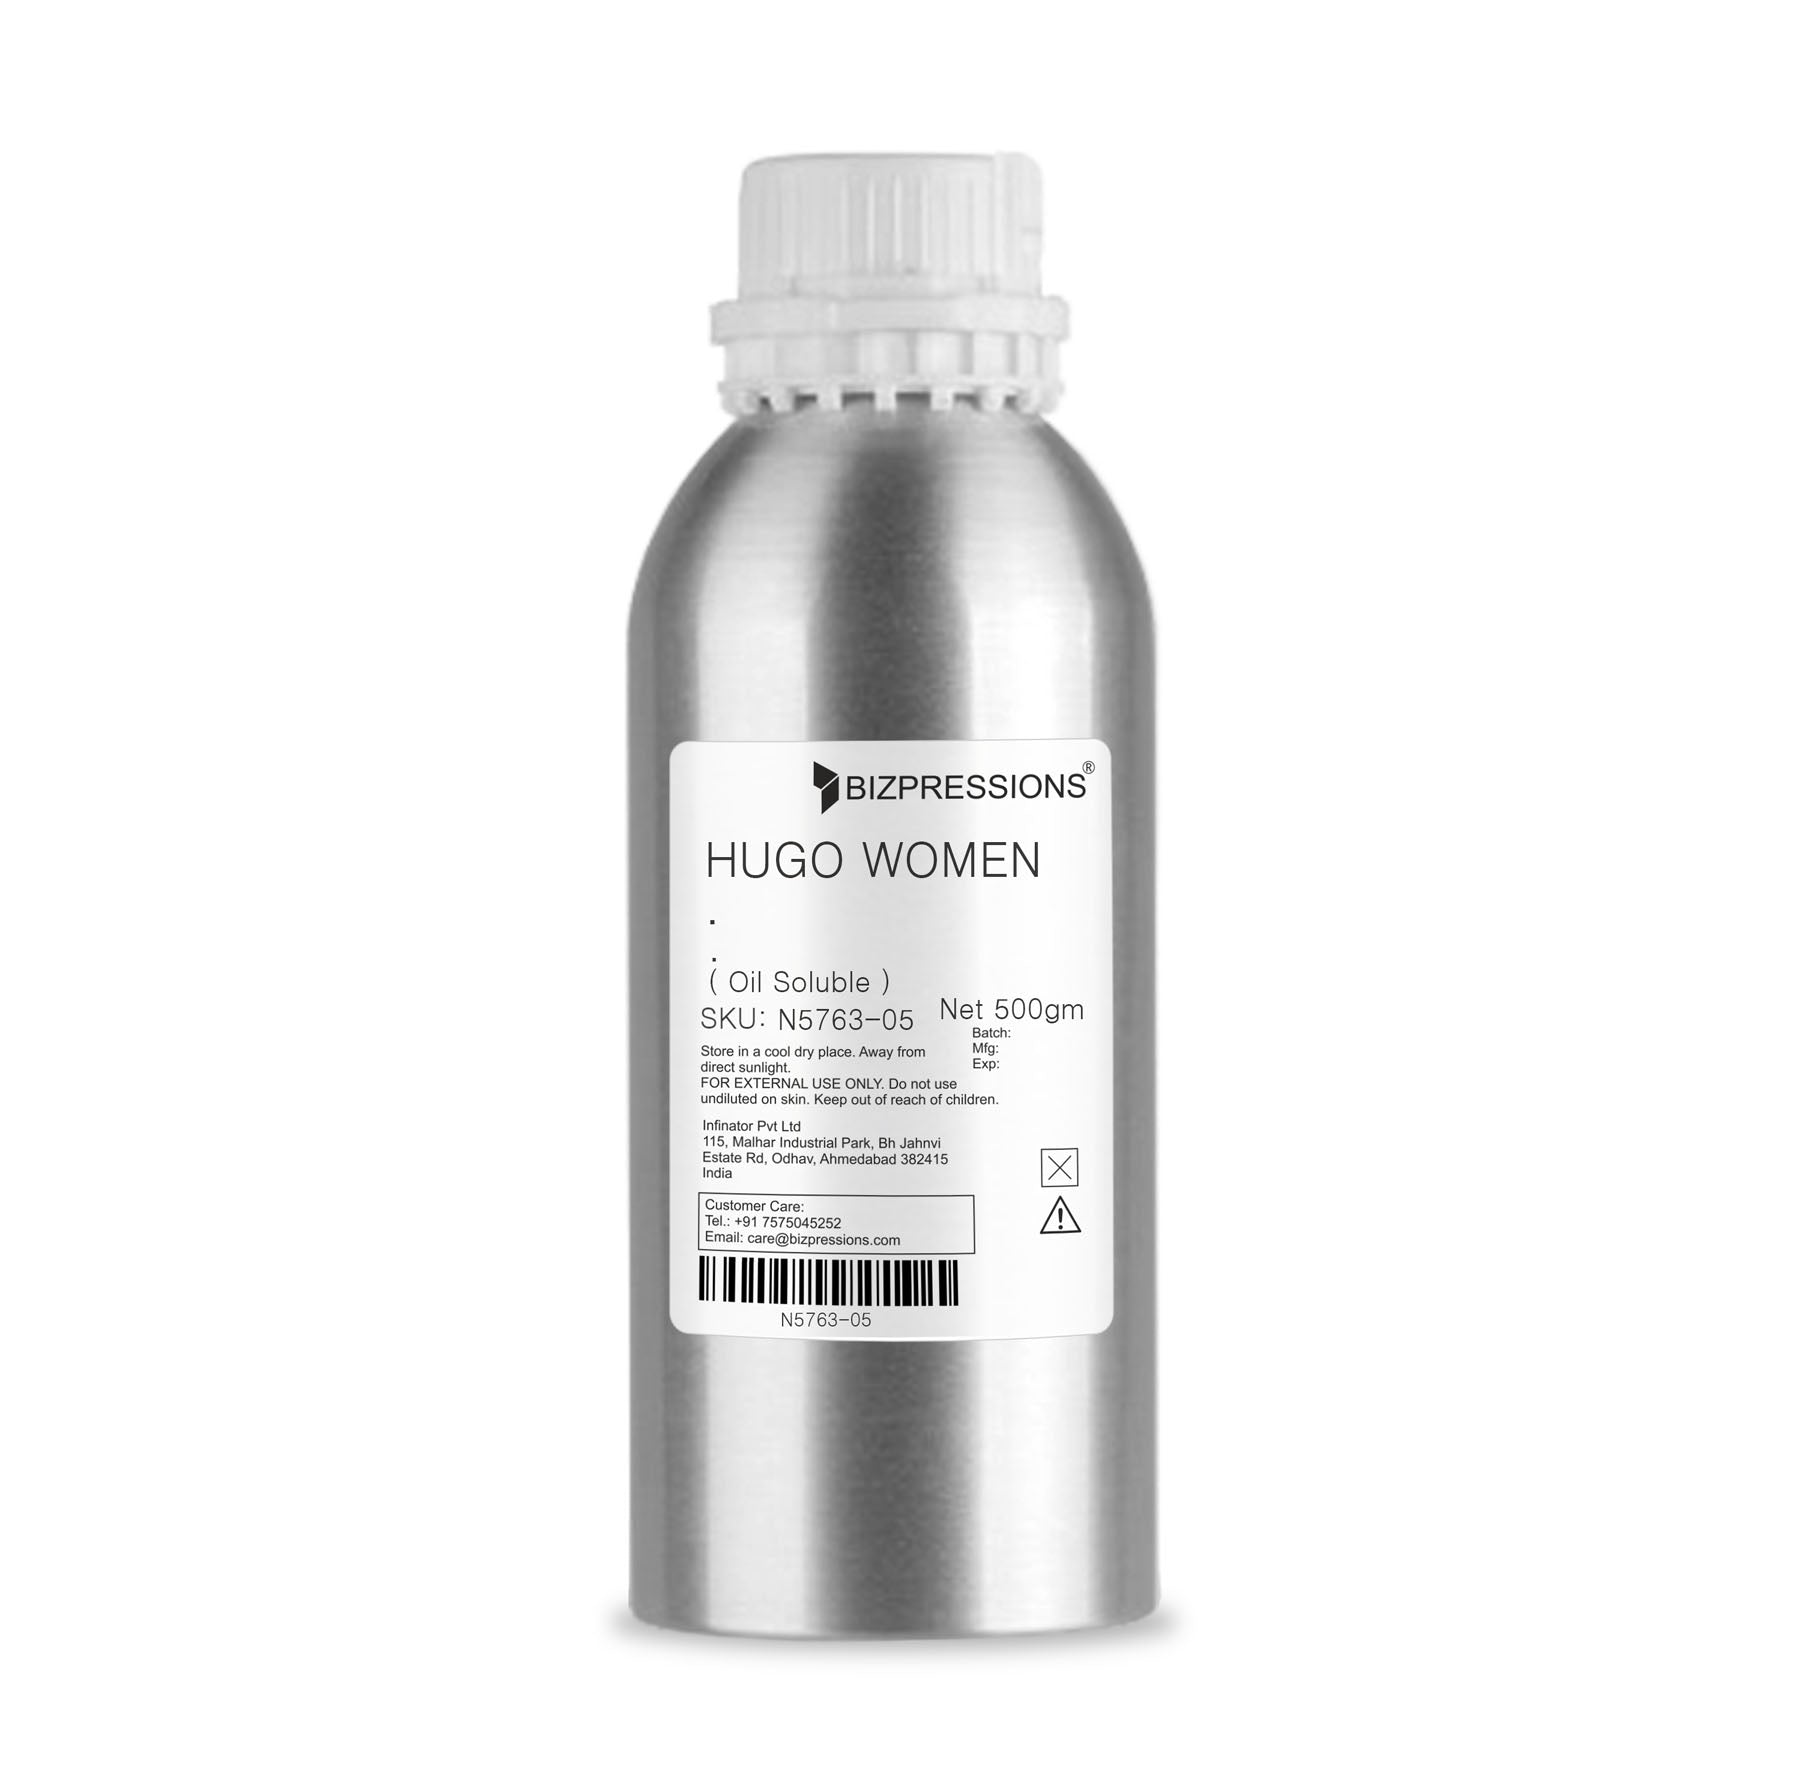 HUGO WOMEN - Fragrance ( Oil Soluble ) - 500 gm